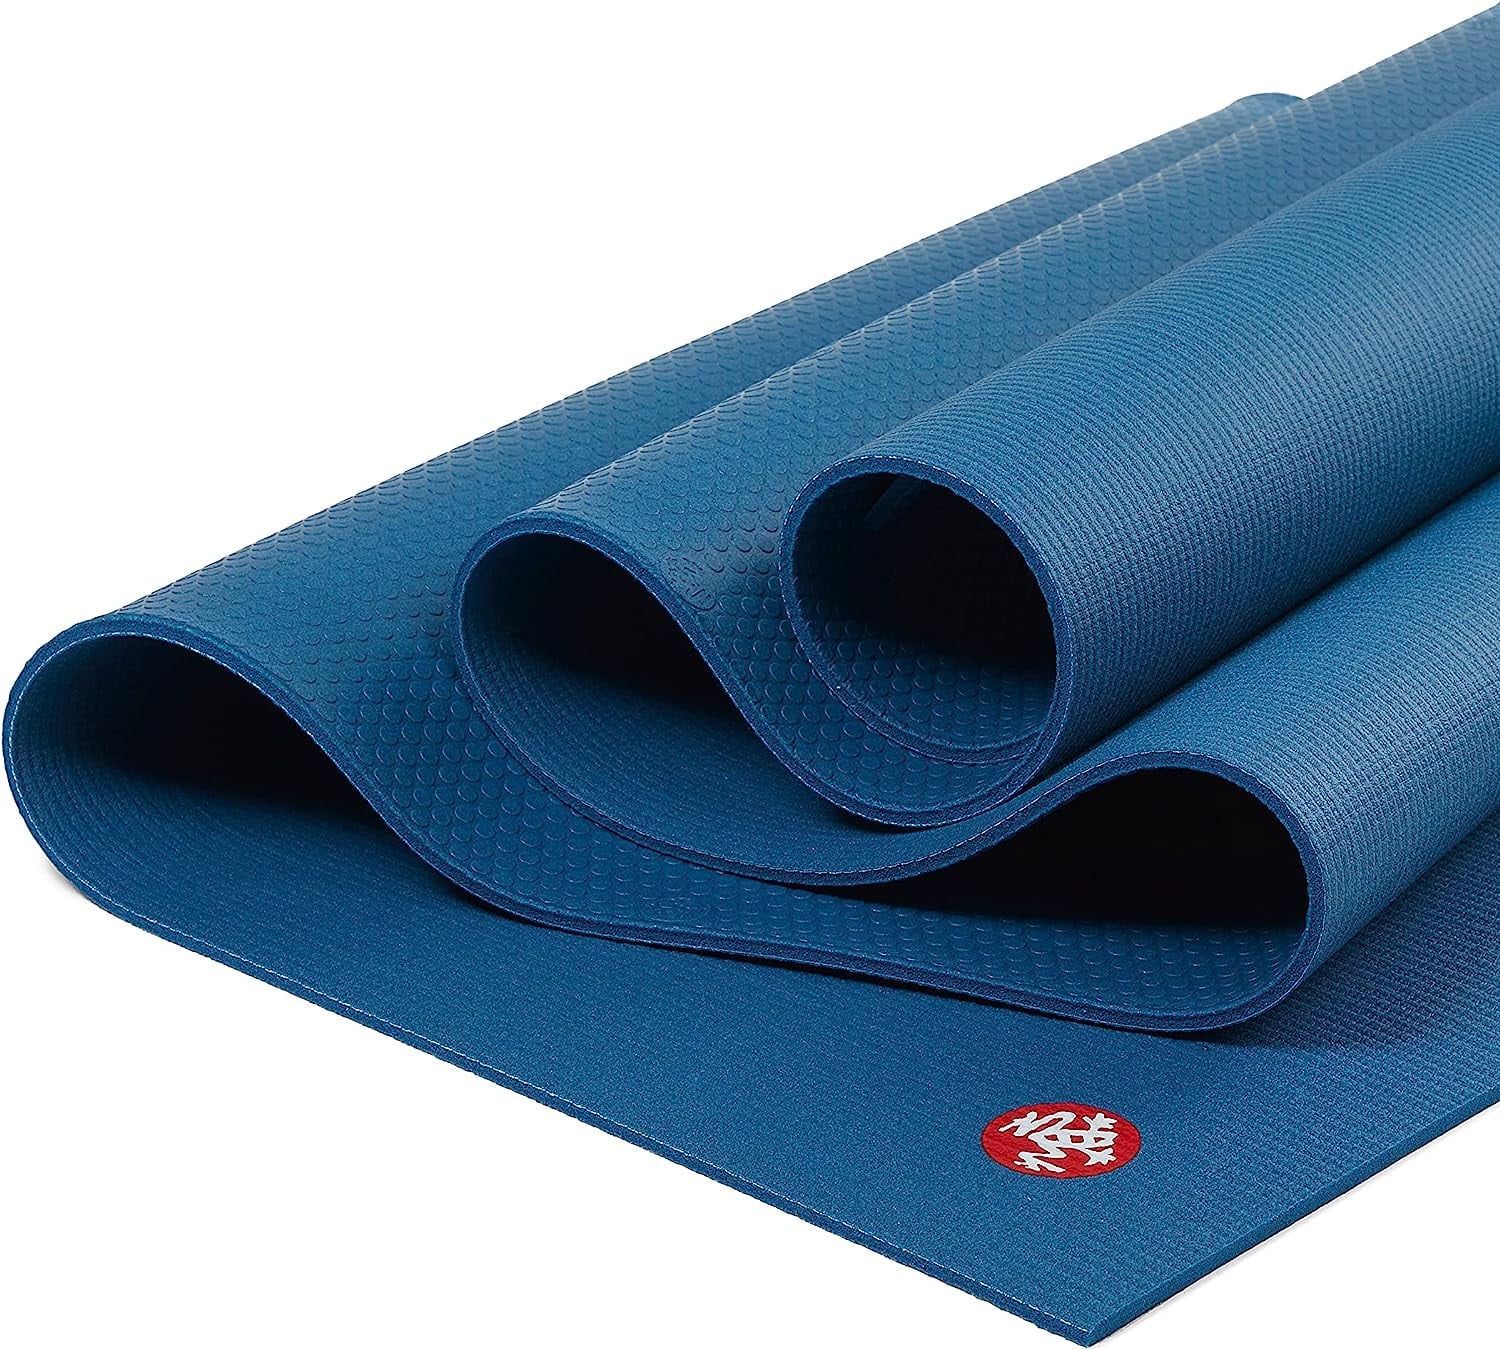 Affordable manduka pro yoga mat For Sale, Sports Equipment